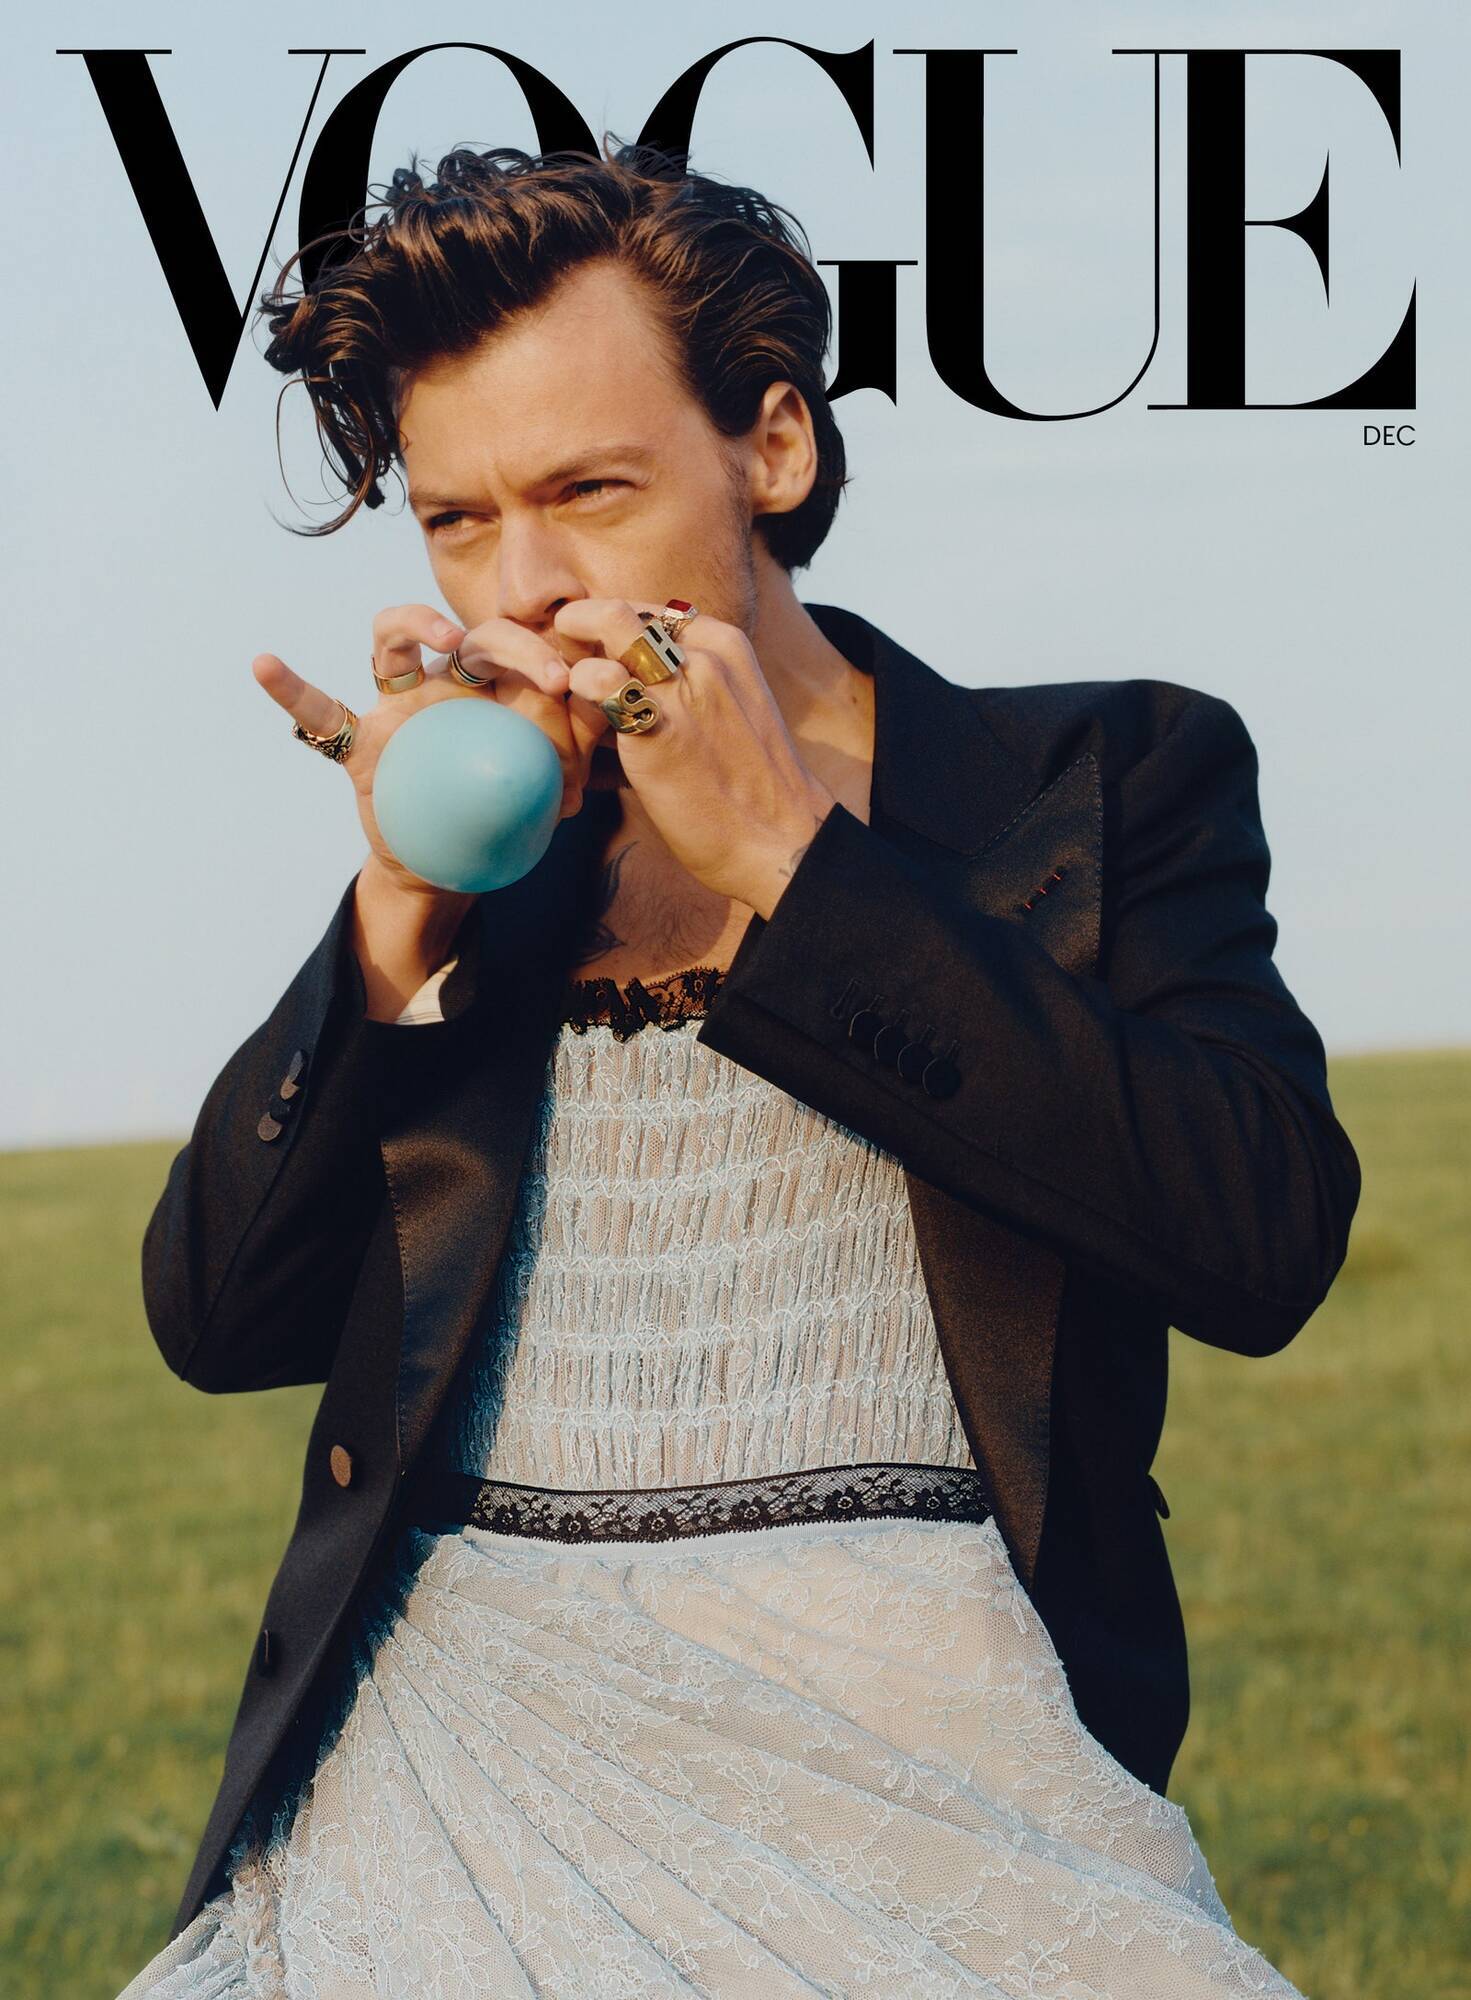 Гаррі Стайлс з'явився на обкладинці журналу "Vogue" у жіночому одязі